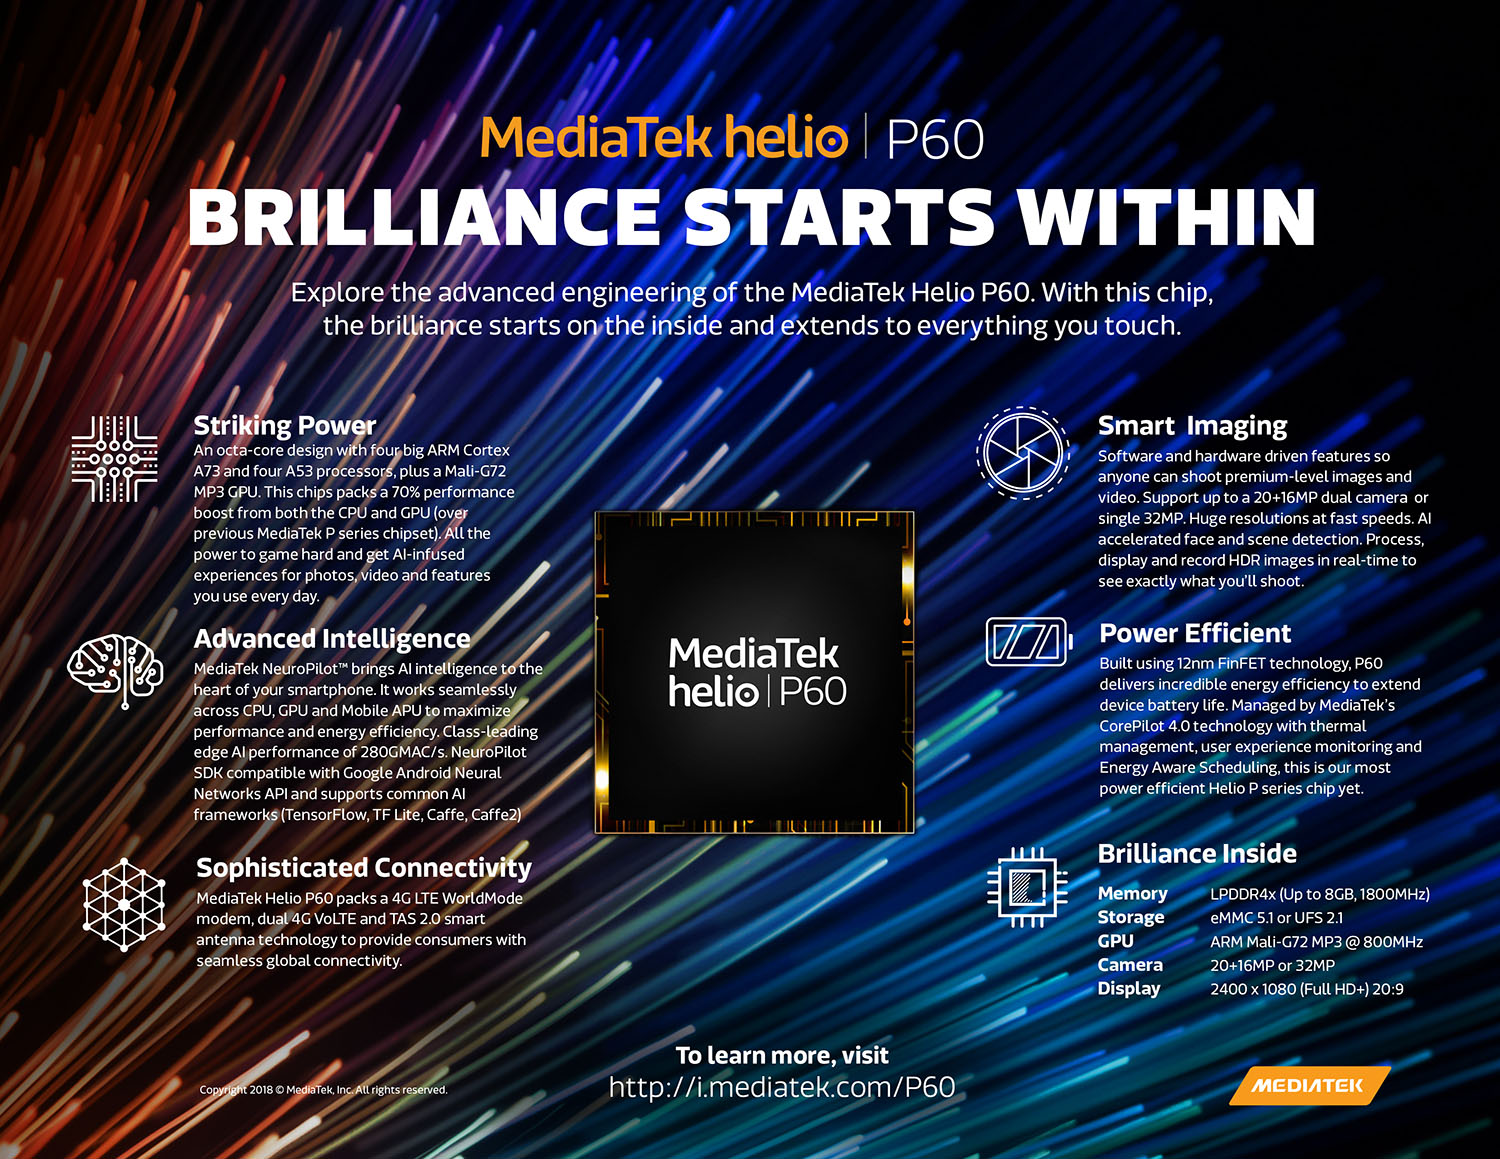 Doanh thu quý 2 của MediaTek dự đoán sẽ được dẫn đầu bởi chipset Helio P60